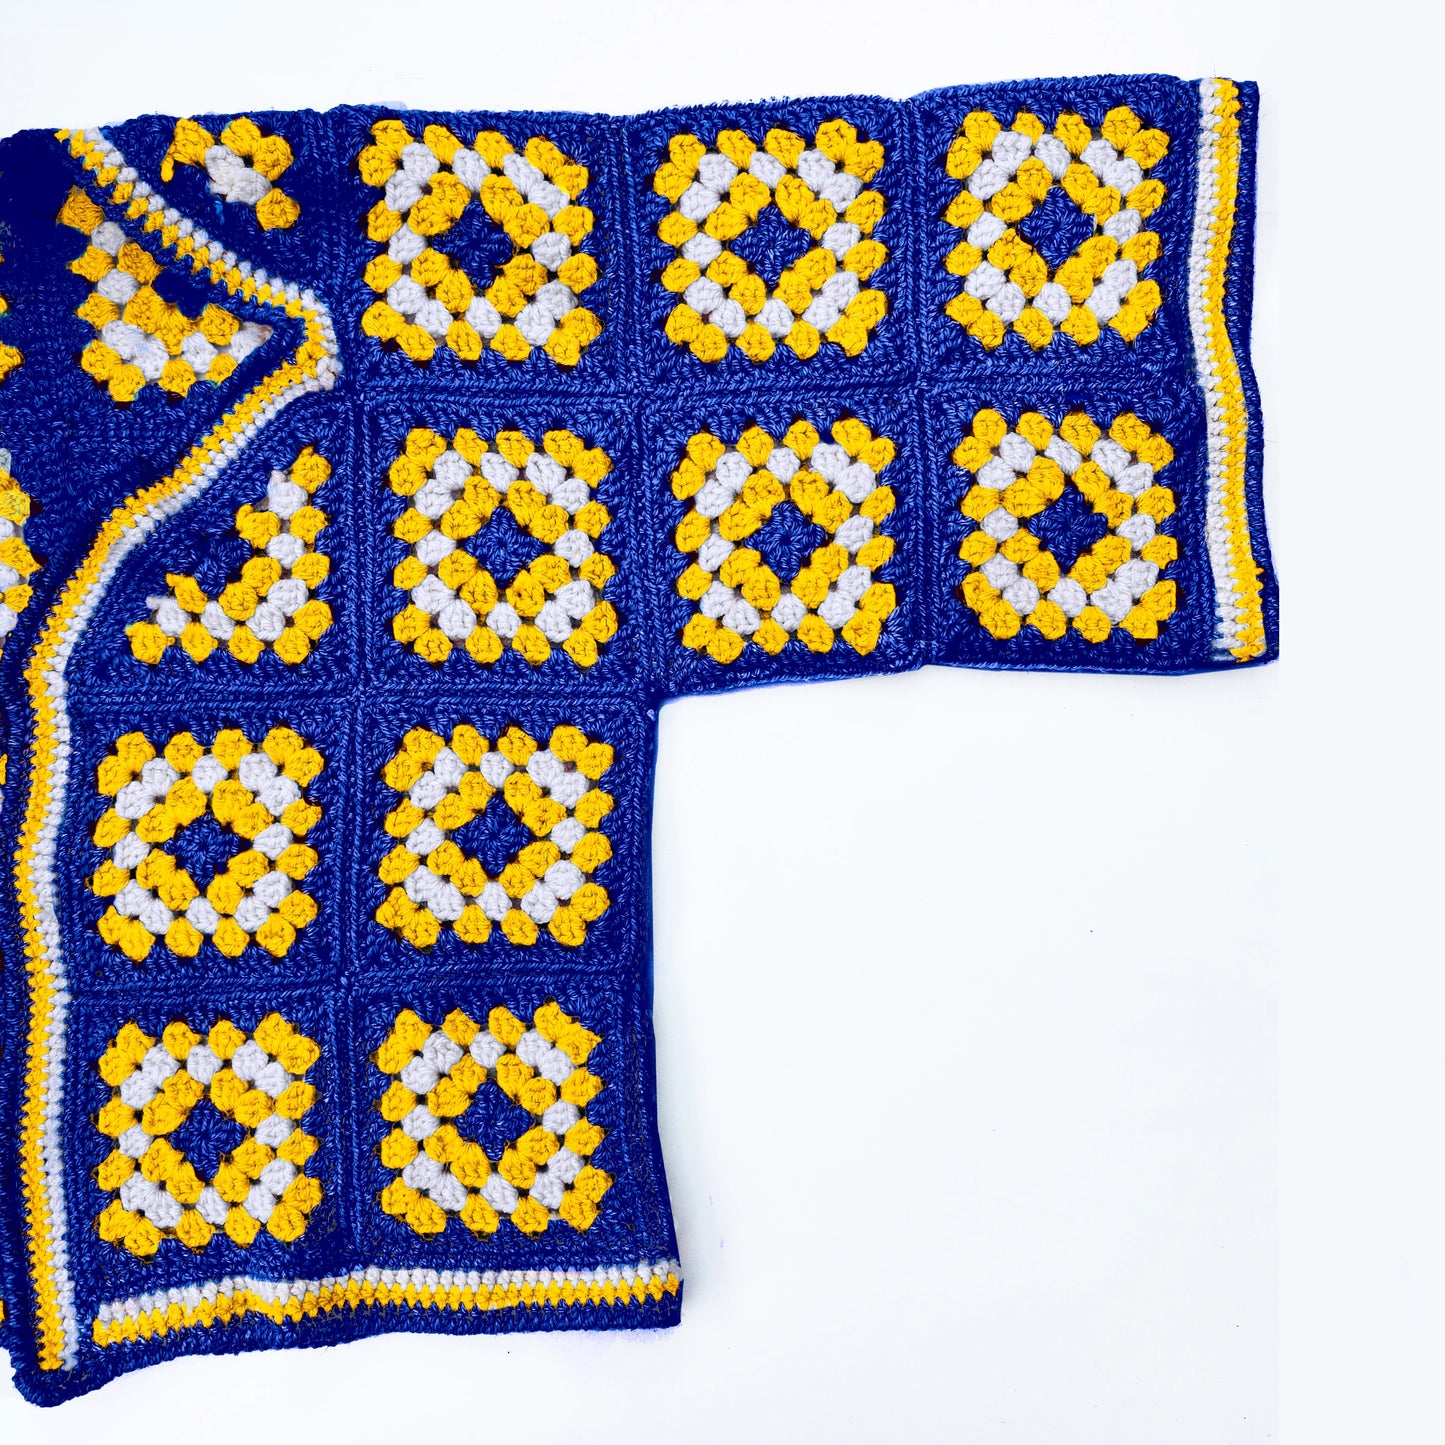 Granny Square Cardigan/Blanket Kit